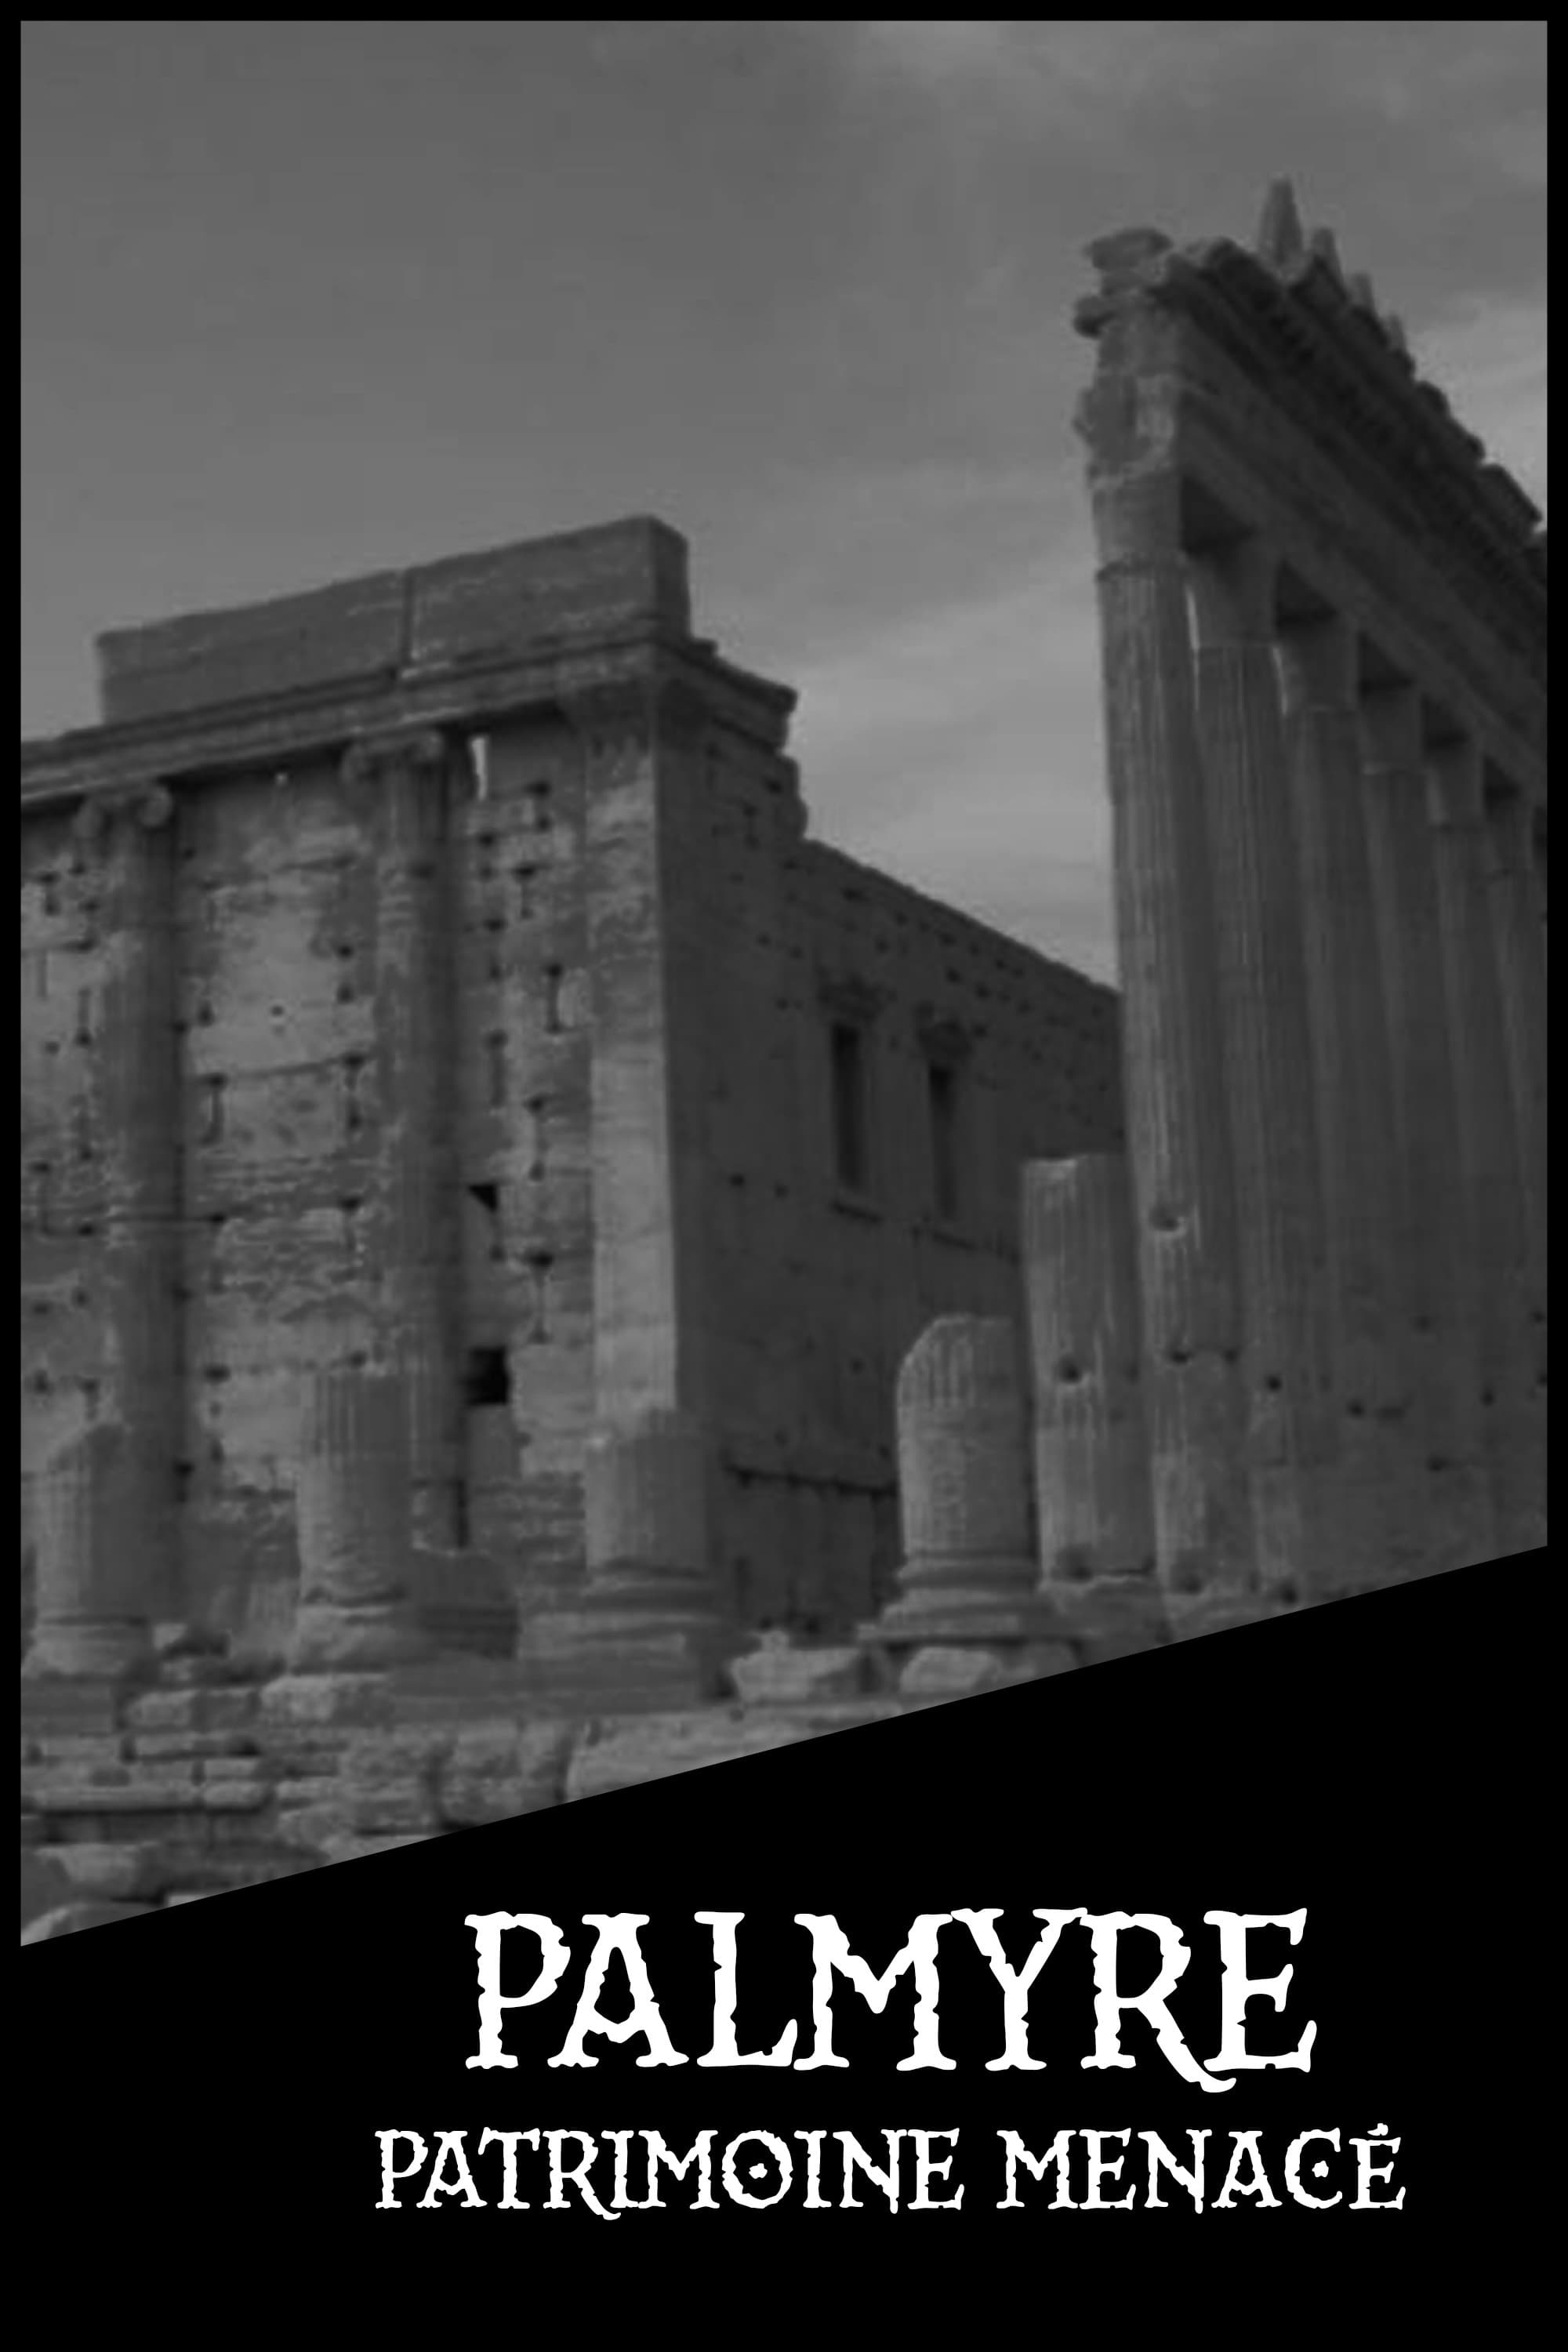 Palmyre, patrimoine menacé